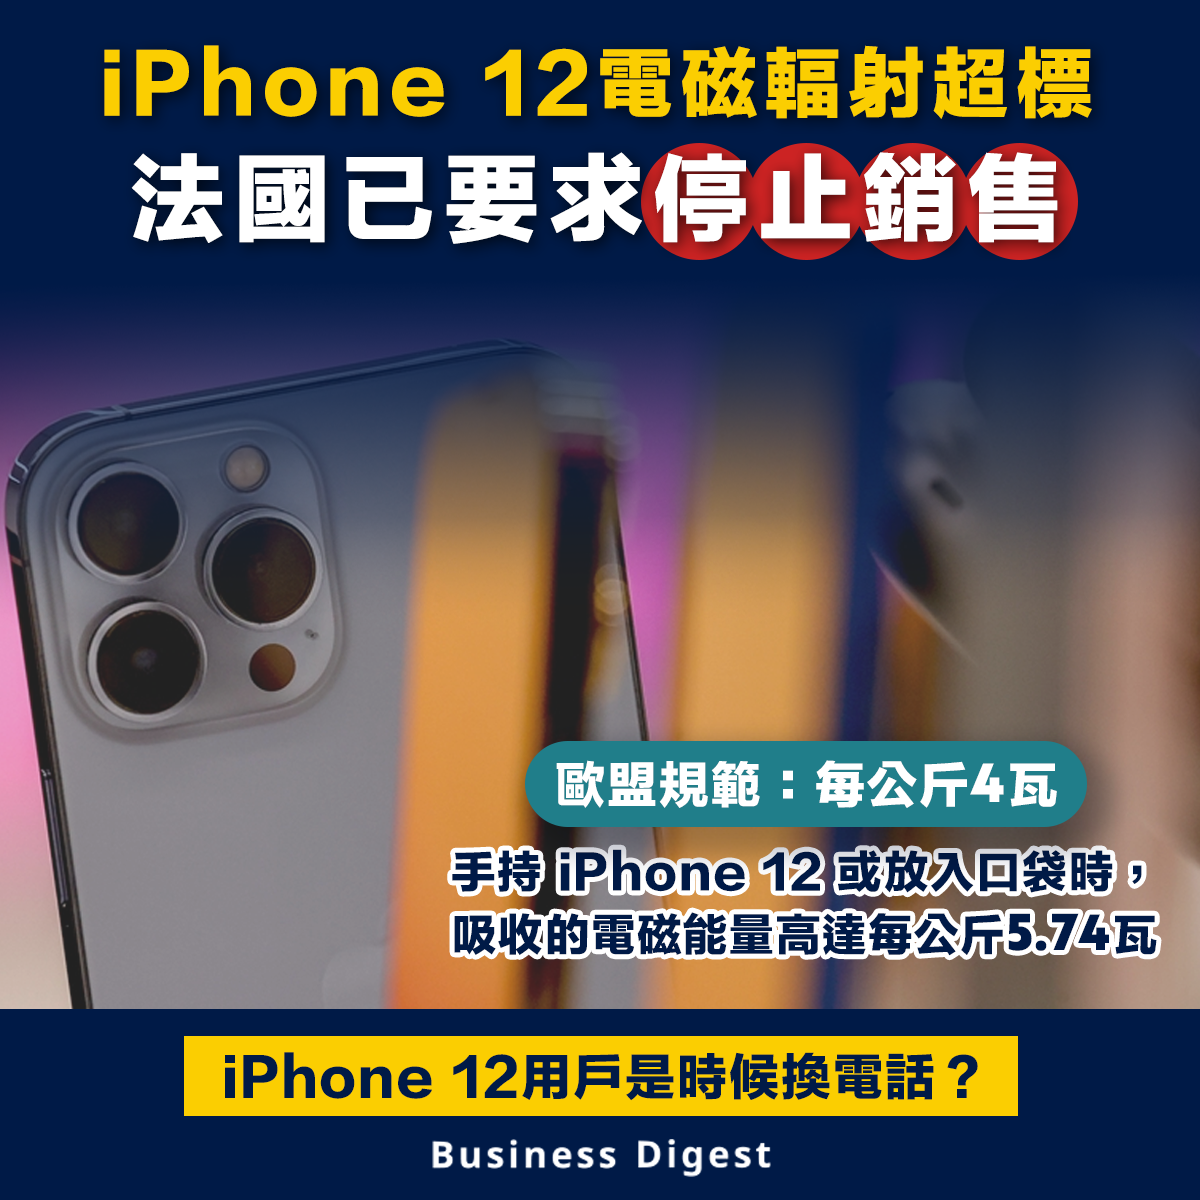 【輻射超標】iPhone 12電磁輻射超標 法國已要求停止銷售